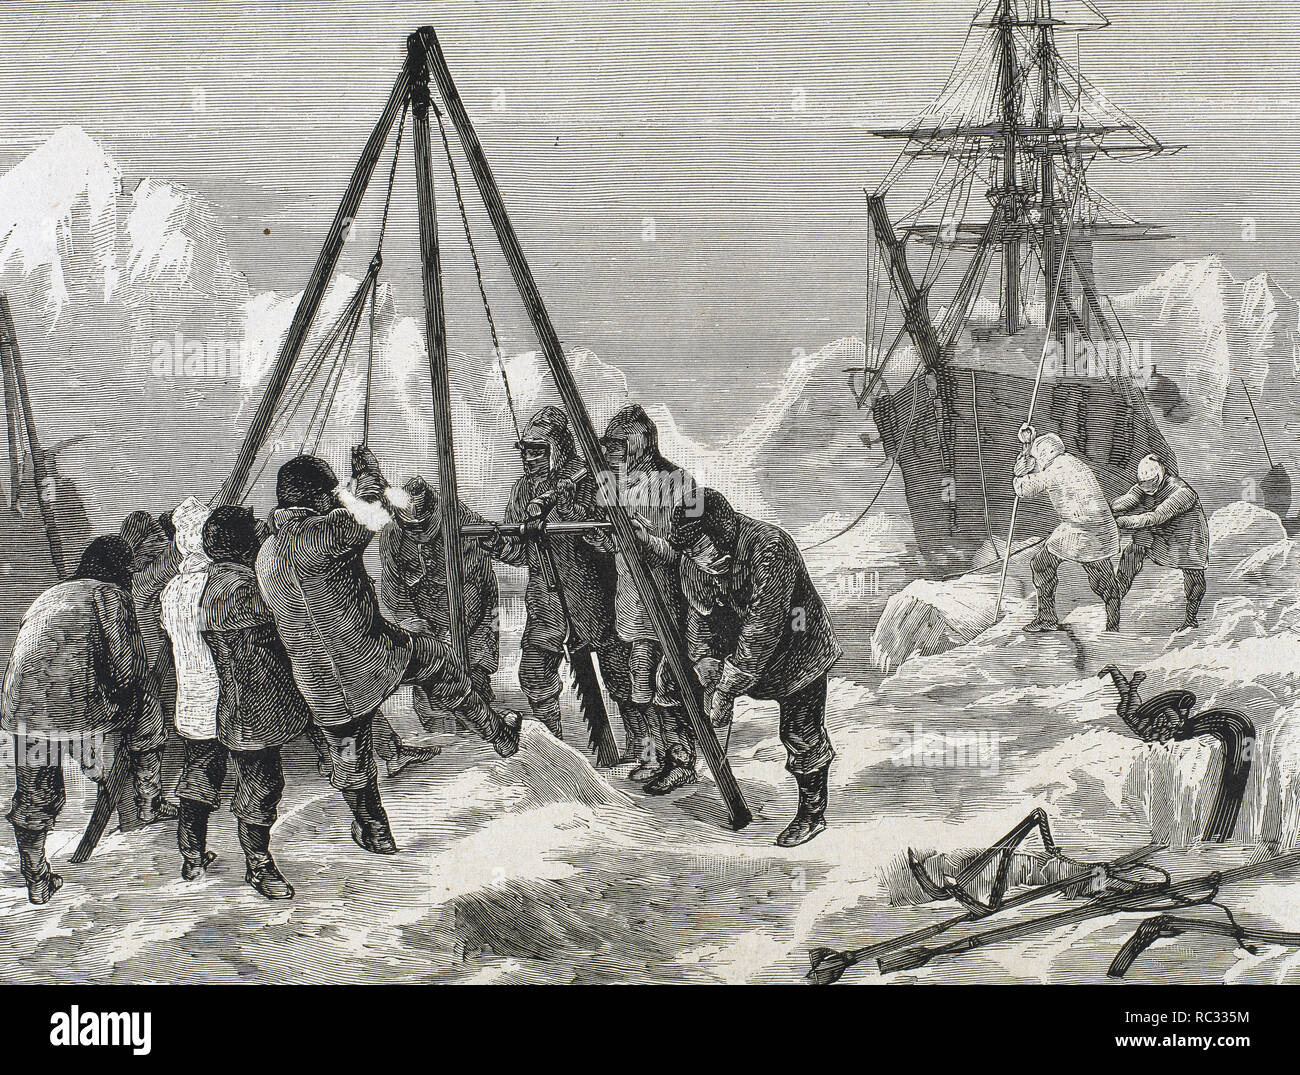 Nares, Sir George Stark (1831-1915). British Naval Officer und Arctic Explorer. Die Crew der Schneiden Eis 'Discovery Alert' für die freie Navigation des Schiffes. 19.-Jahrhundert Gravur. Stockfoto